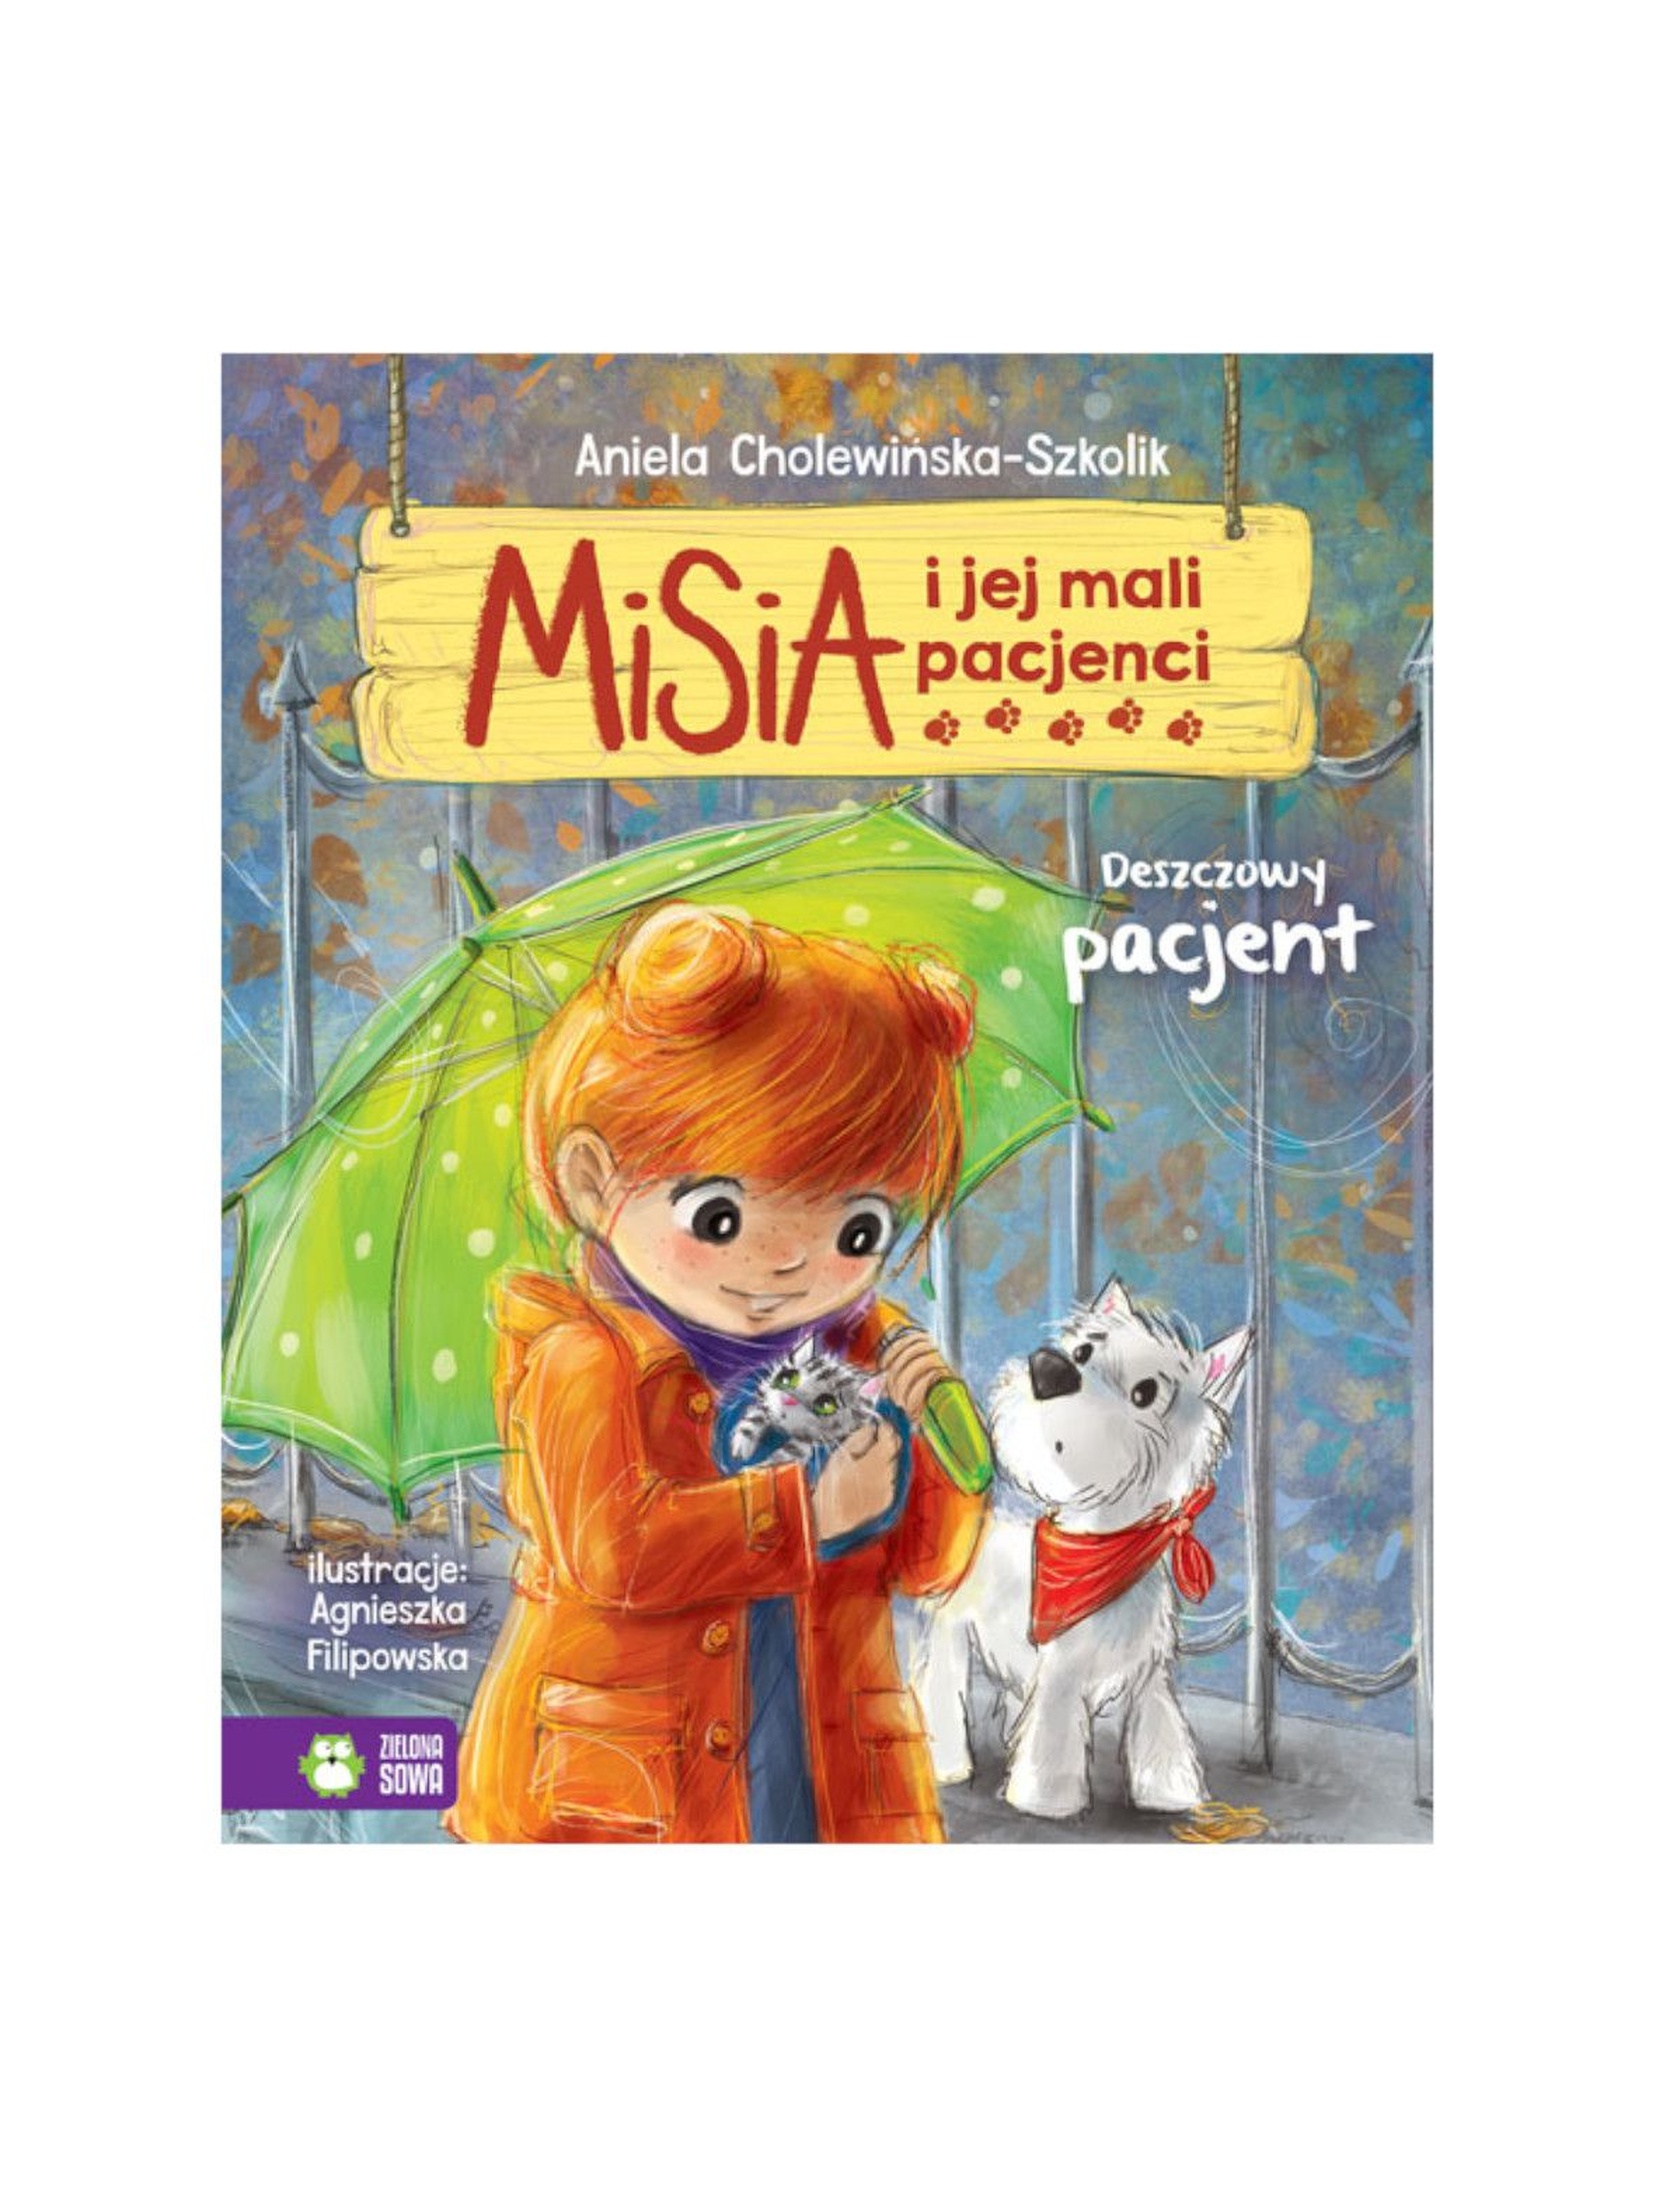 Książka dla dzieci- Deszczowy pacjent. Misia i jej mali pacjenci wiek 4+